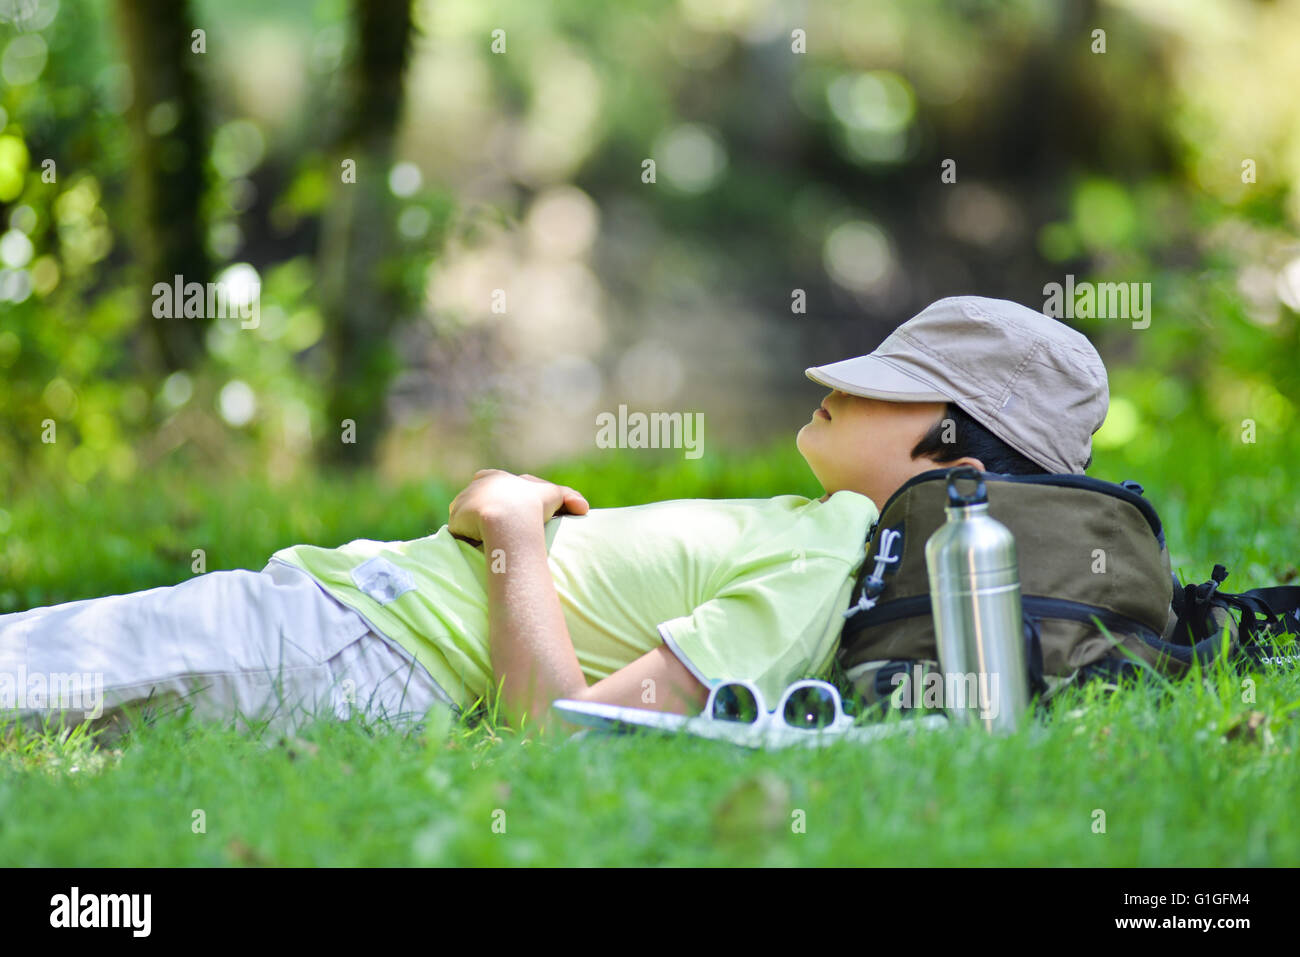 Jeune garçon allongé dans l'herbe dormir, France Banque D'Images